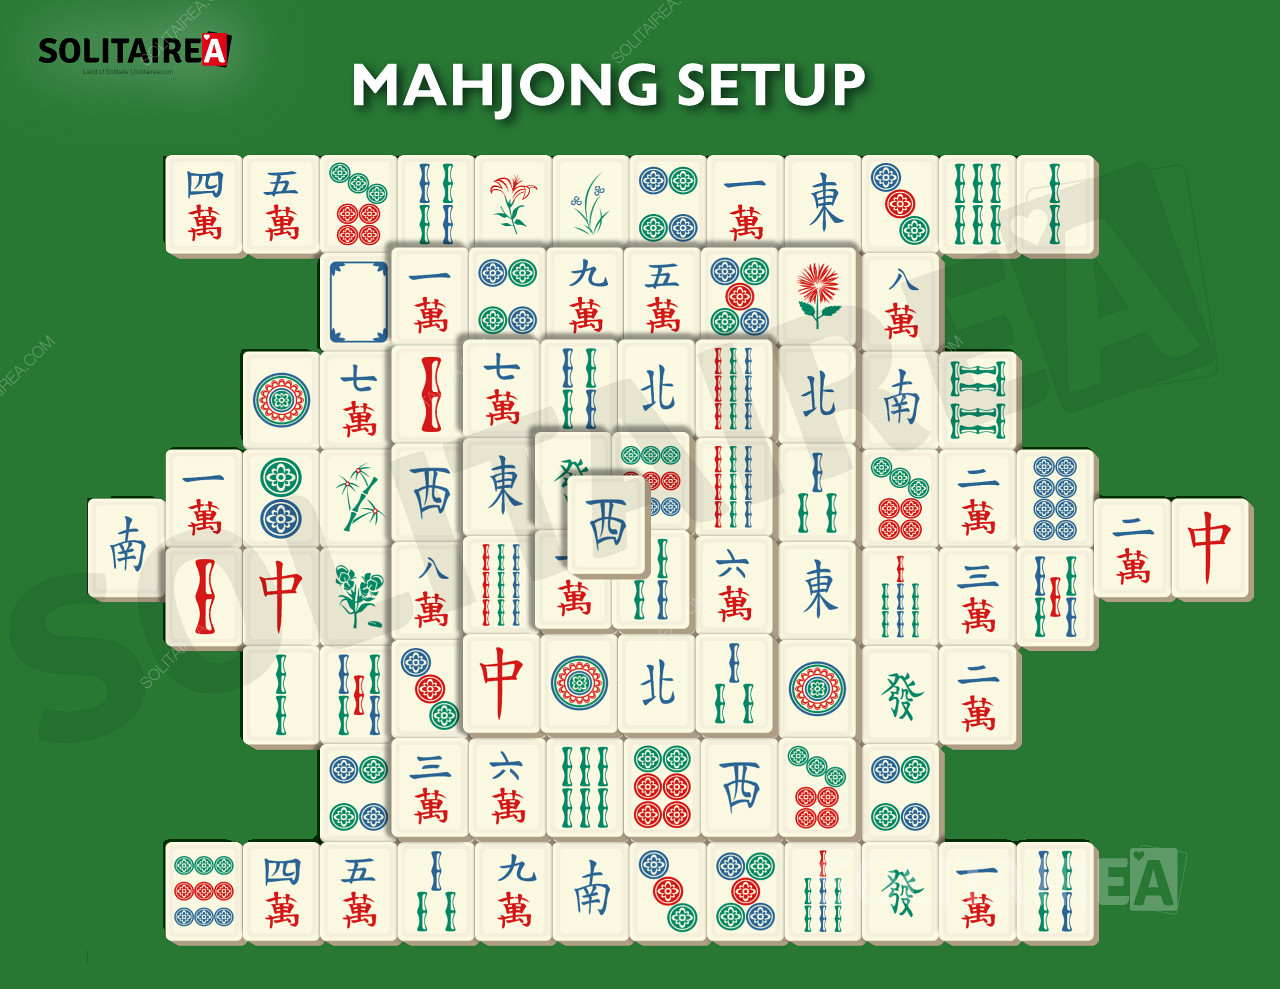 Imagem que mostra o aspeto da configuração do Mahjong Solitaire.